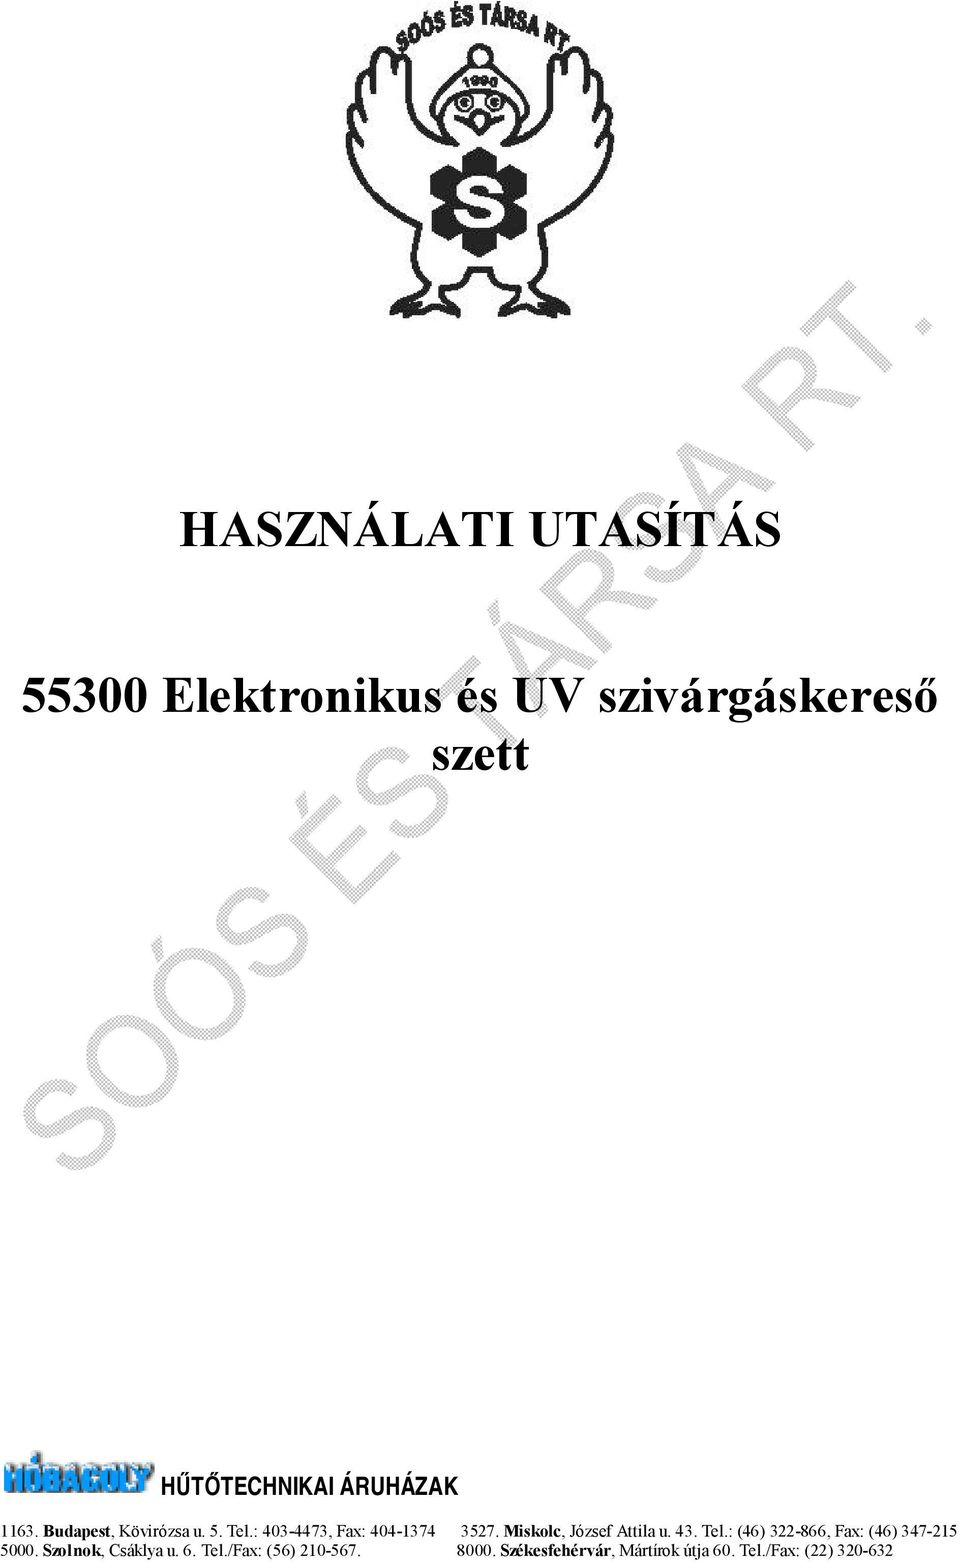 Miskolc, József Attila u. 43. Tel.: (46) 322-866, Fax: (46) 347-215 5000.